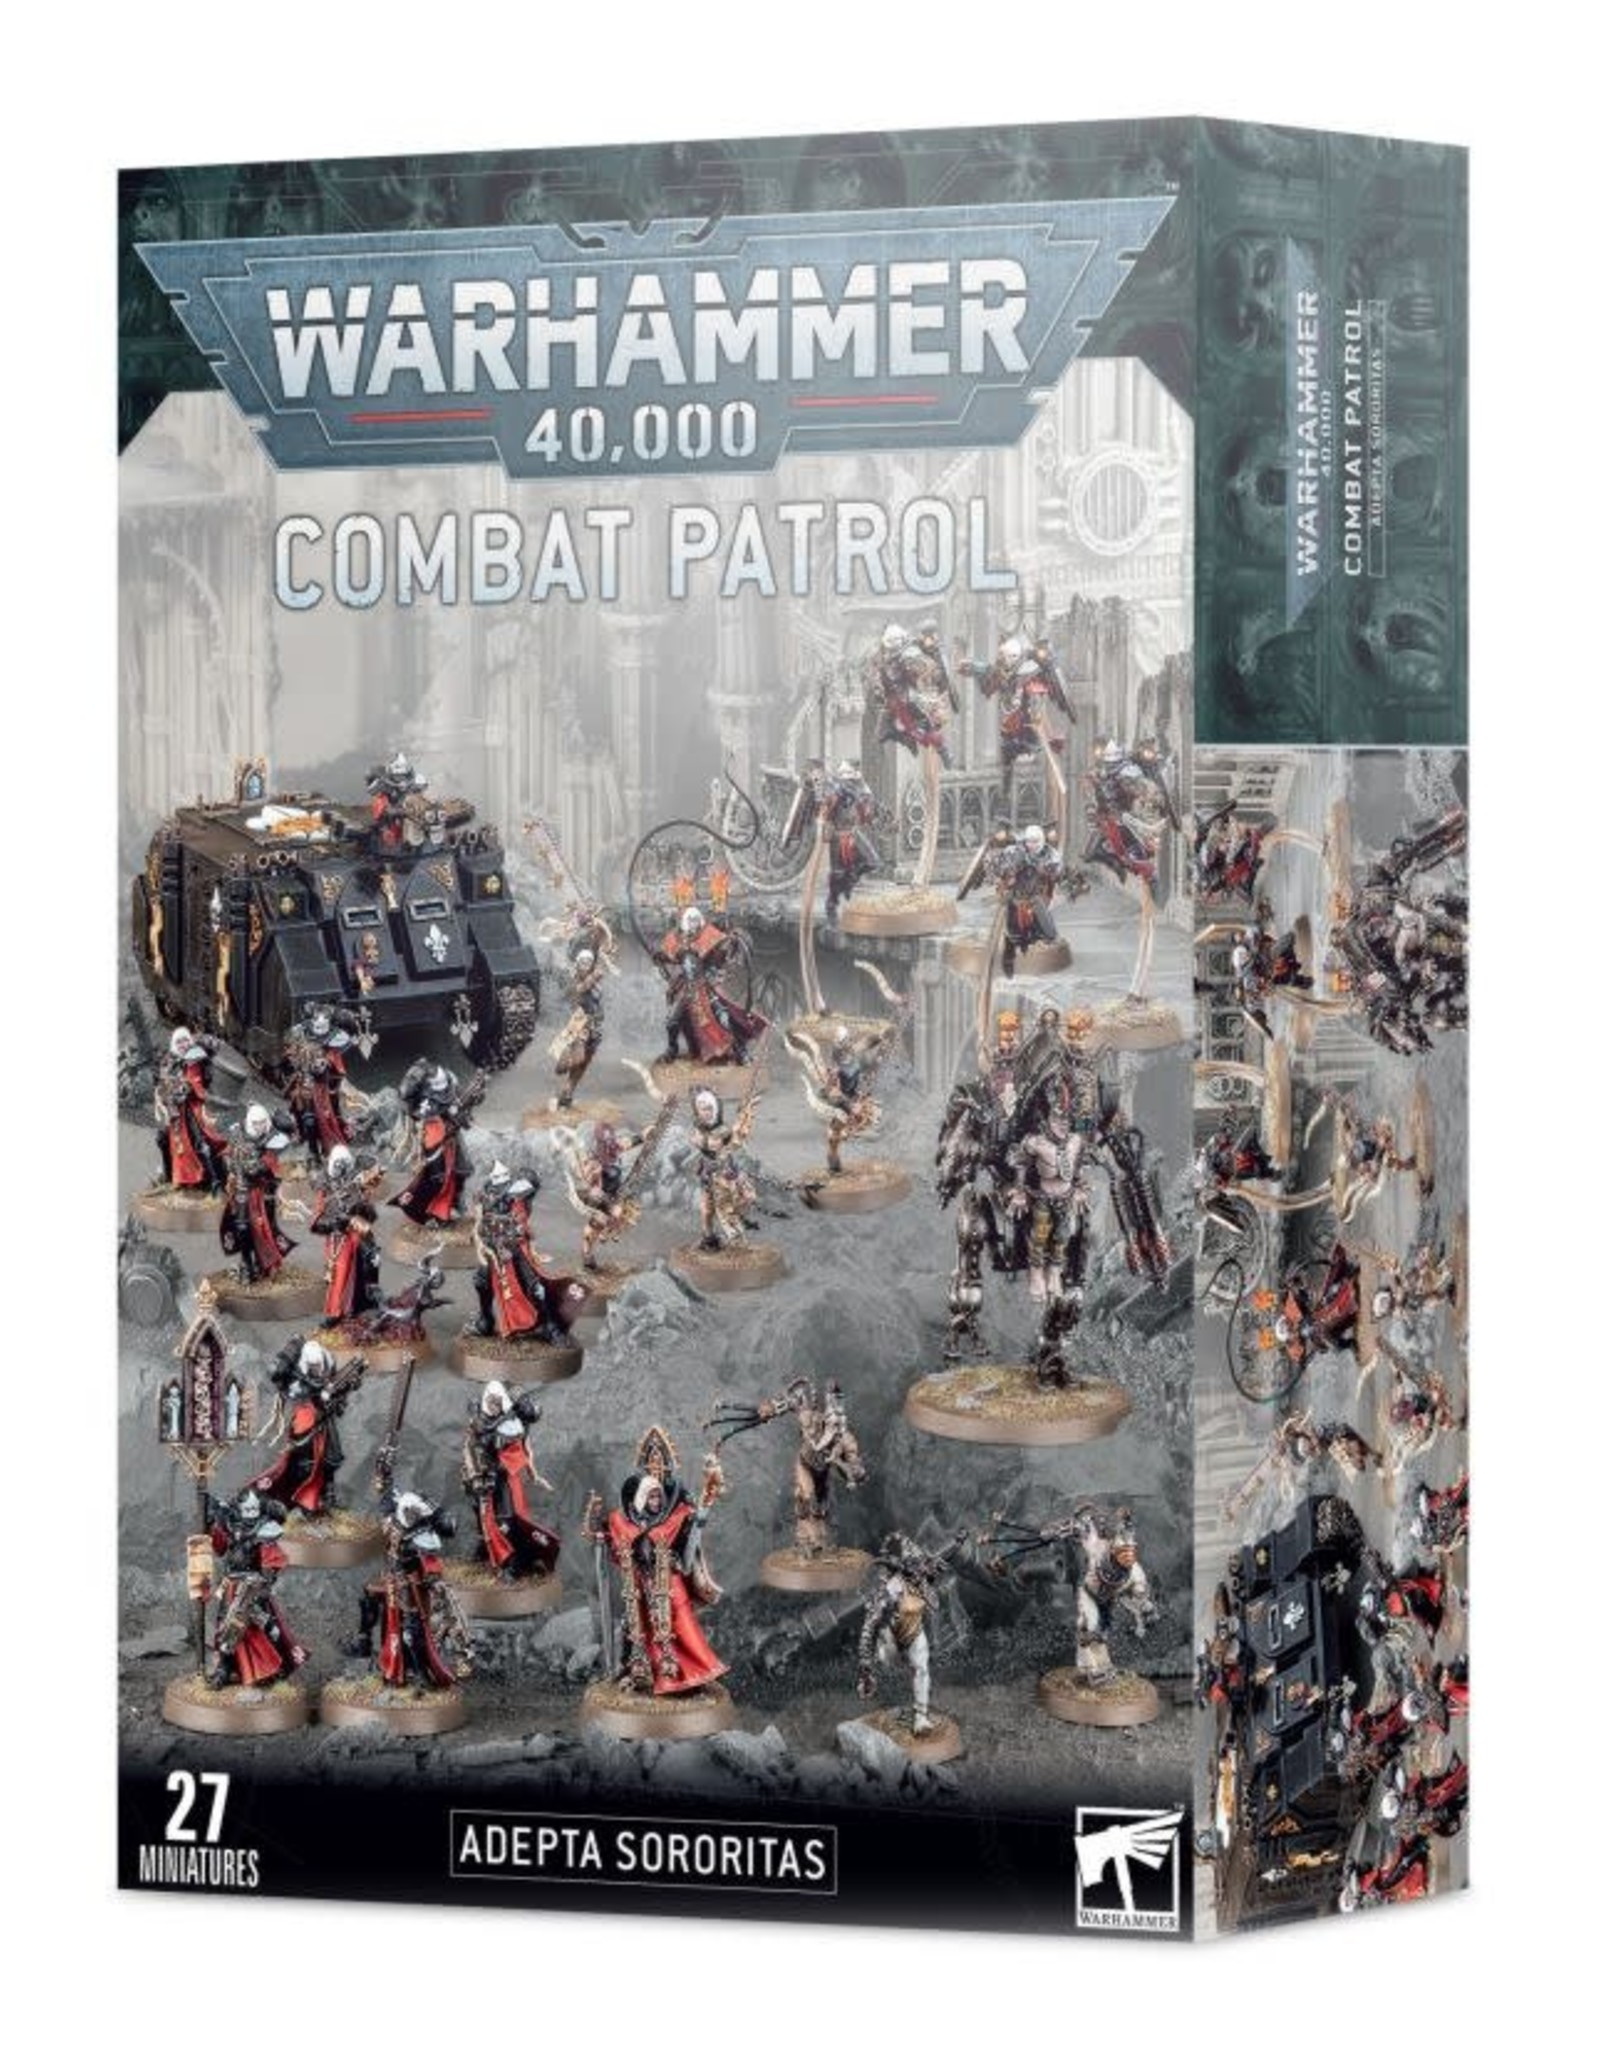 Warhammer 40k Combat Patrol: Adepta Sororitas